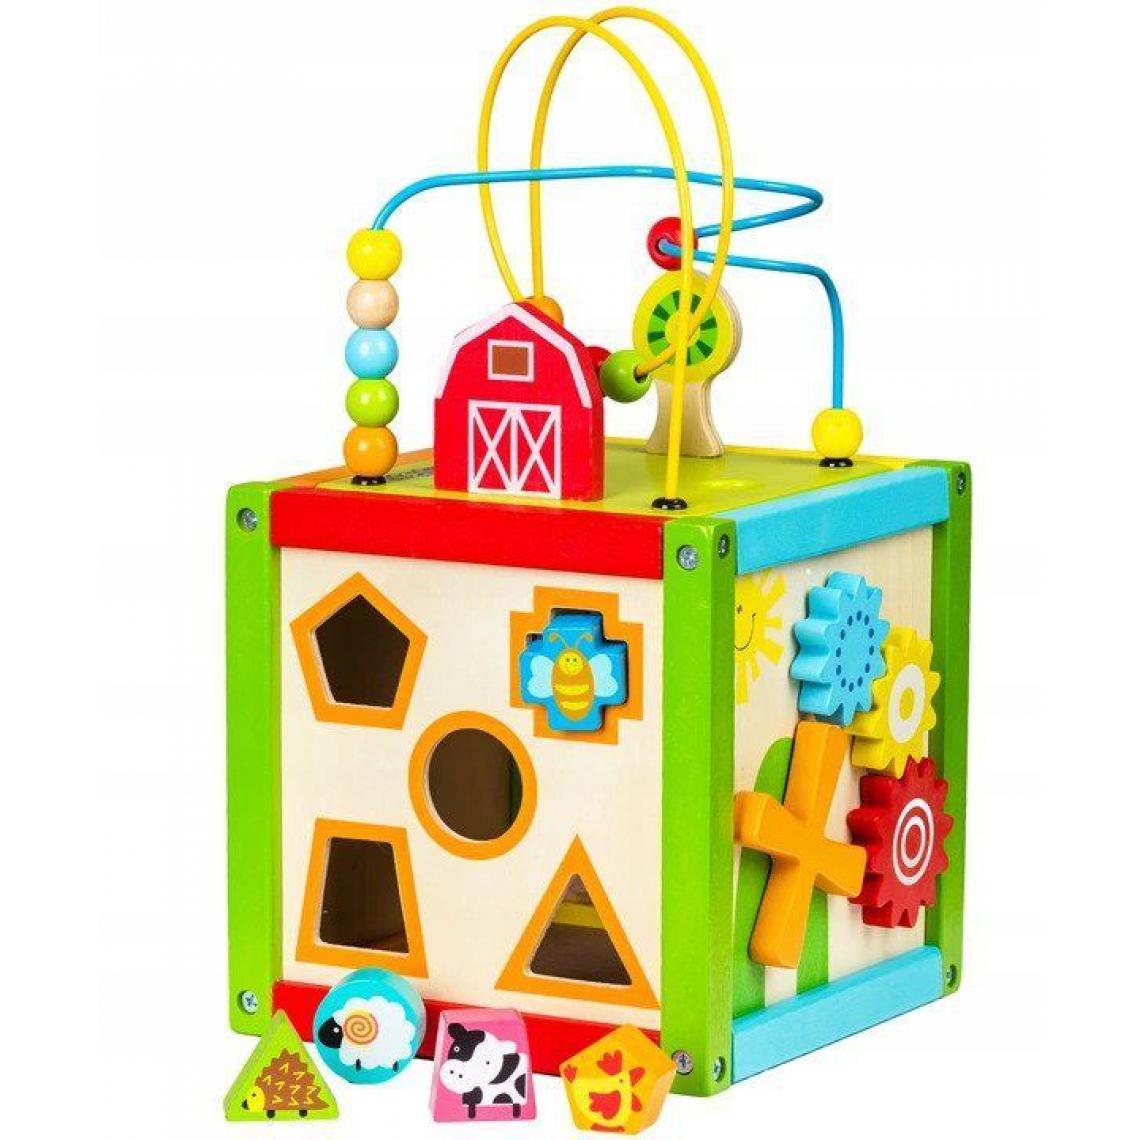 Hucoco - MSTORE - Cube éducatif trieur - 18m+ - Roues dentées+labyrinthe - Jouet pour enfants - Vert - Jeux d'éveil